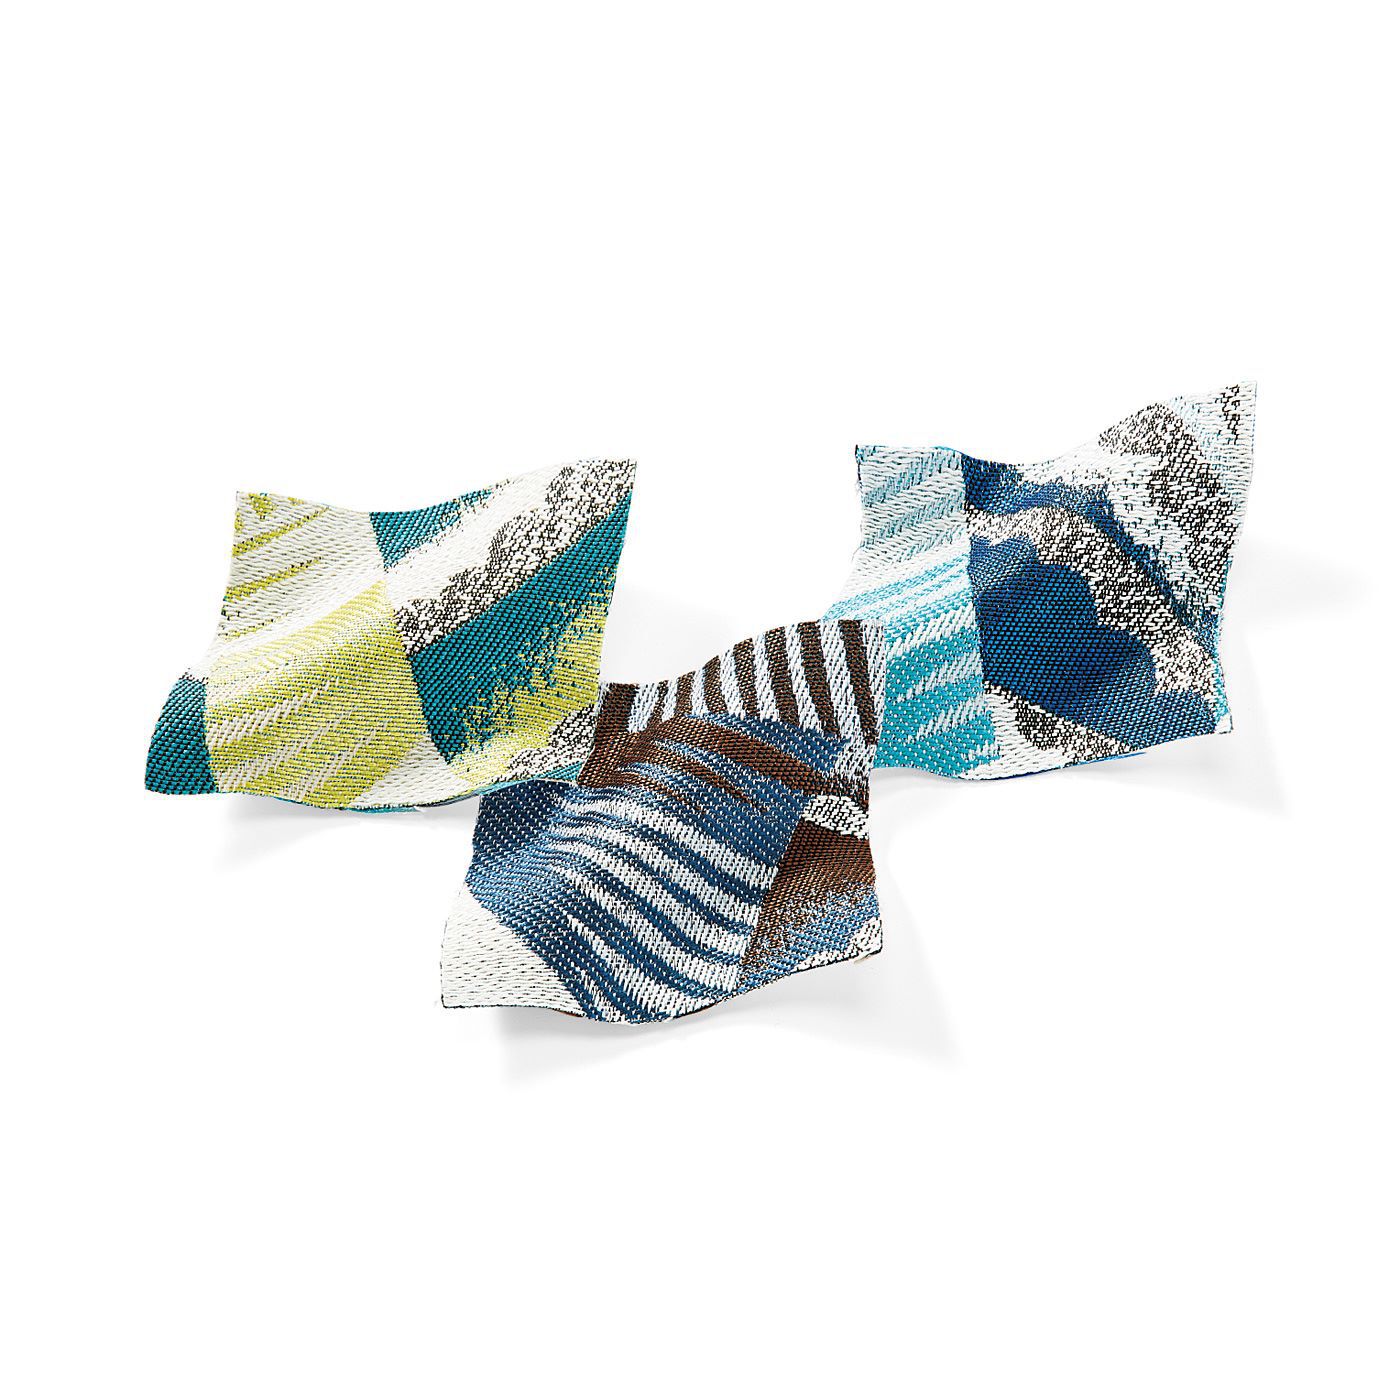 Real Stock|UP.de　がばっと開いてさっと取り出せる　織柄が美しい二つ折り財布|大人っぽい柄と明るい配色でおしゃれな印象に。